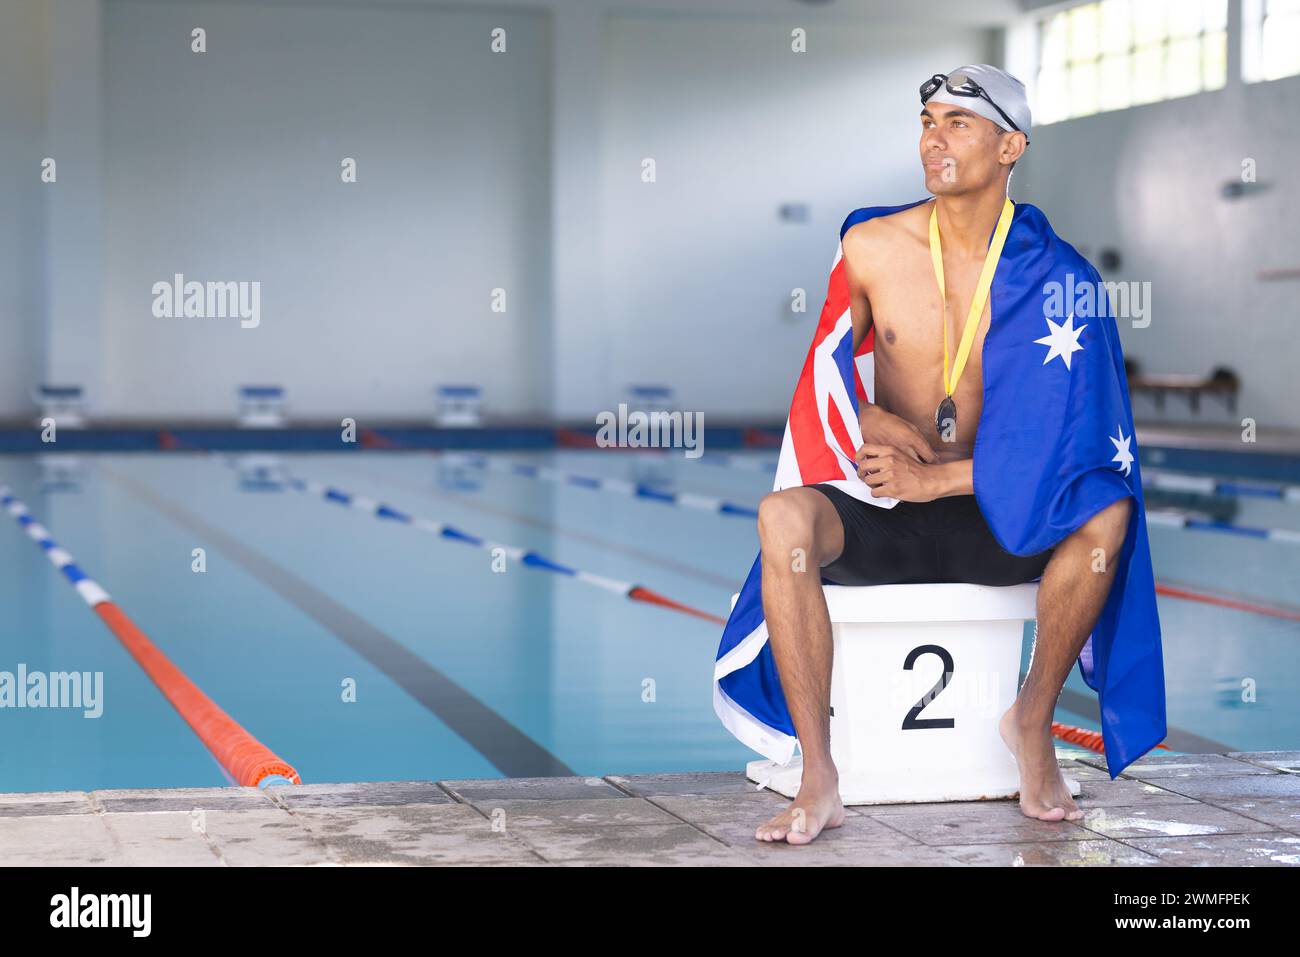 Der Schwimmer, der in eine australische Flagge gewickelt ist, sitzt am Pool mit einer Medaille und einem Kopierraum Stockfoto